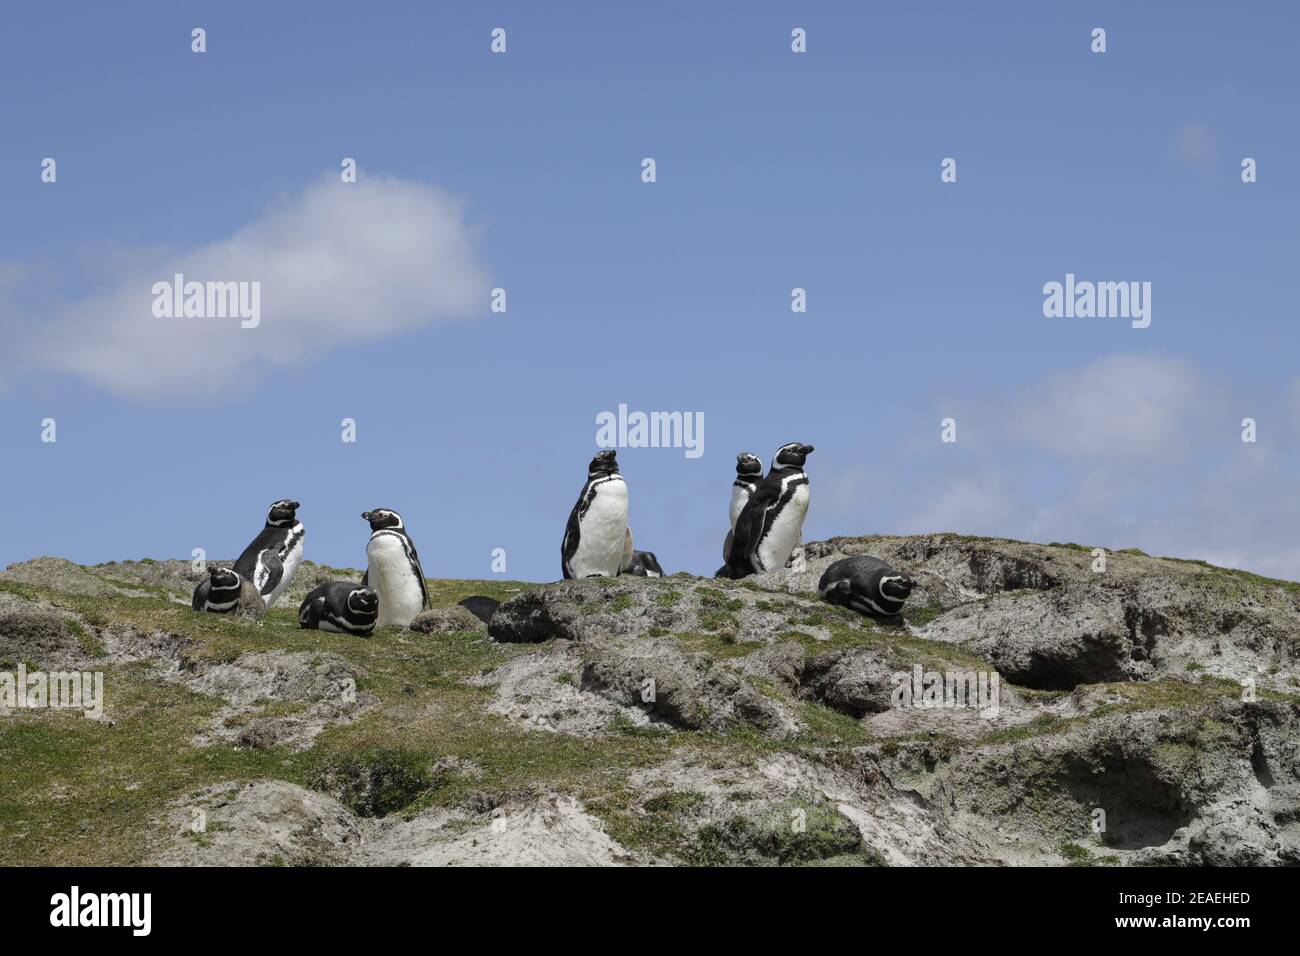 Magellanic Penguins, Spheniscus magellanicus, at their breeding burrows Stock Photo